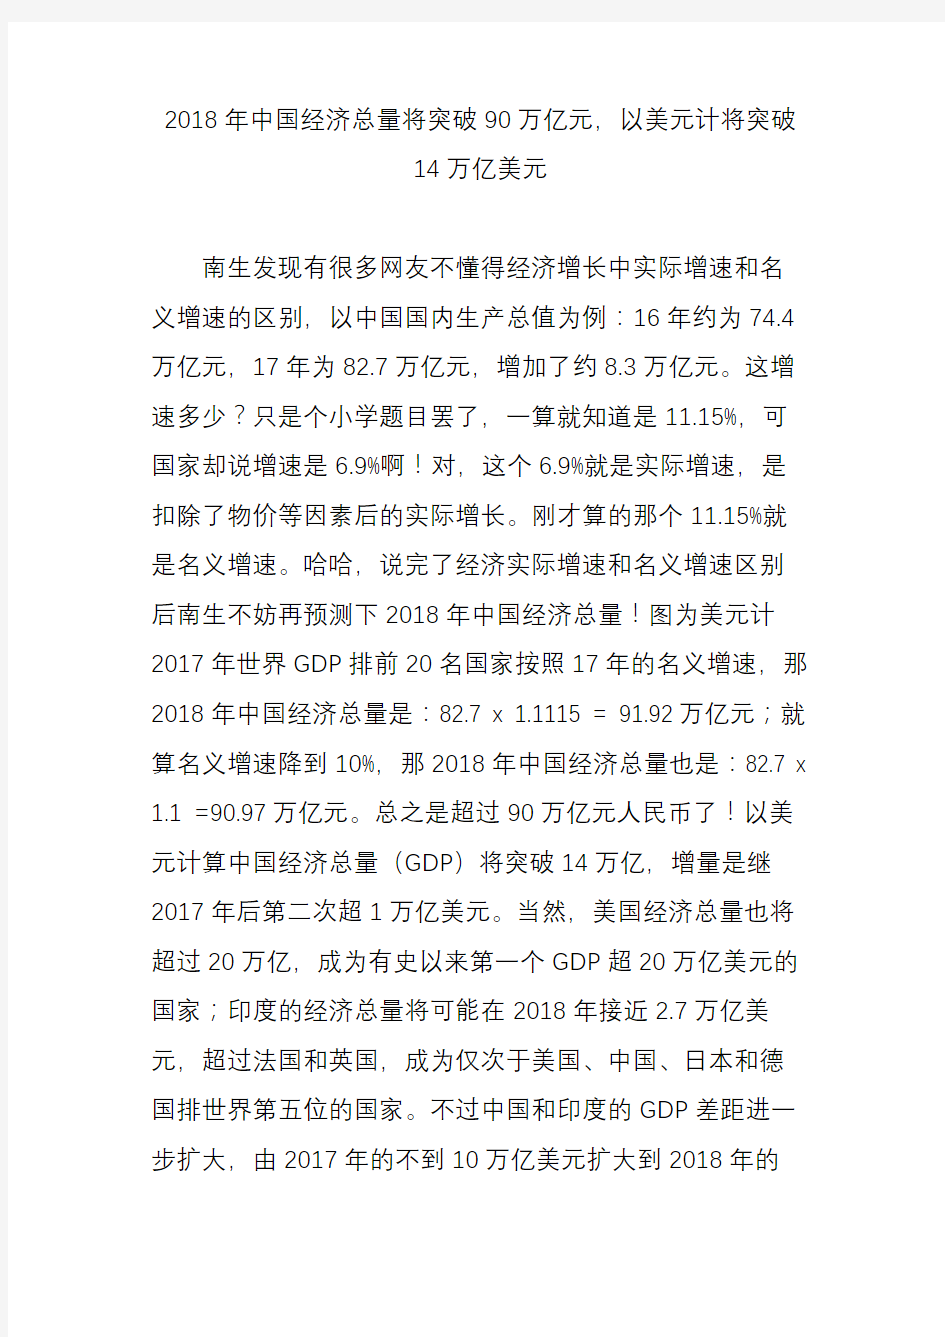 2018年中国经济总量将突破90万亿元以美元计将突破14万亿美元